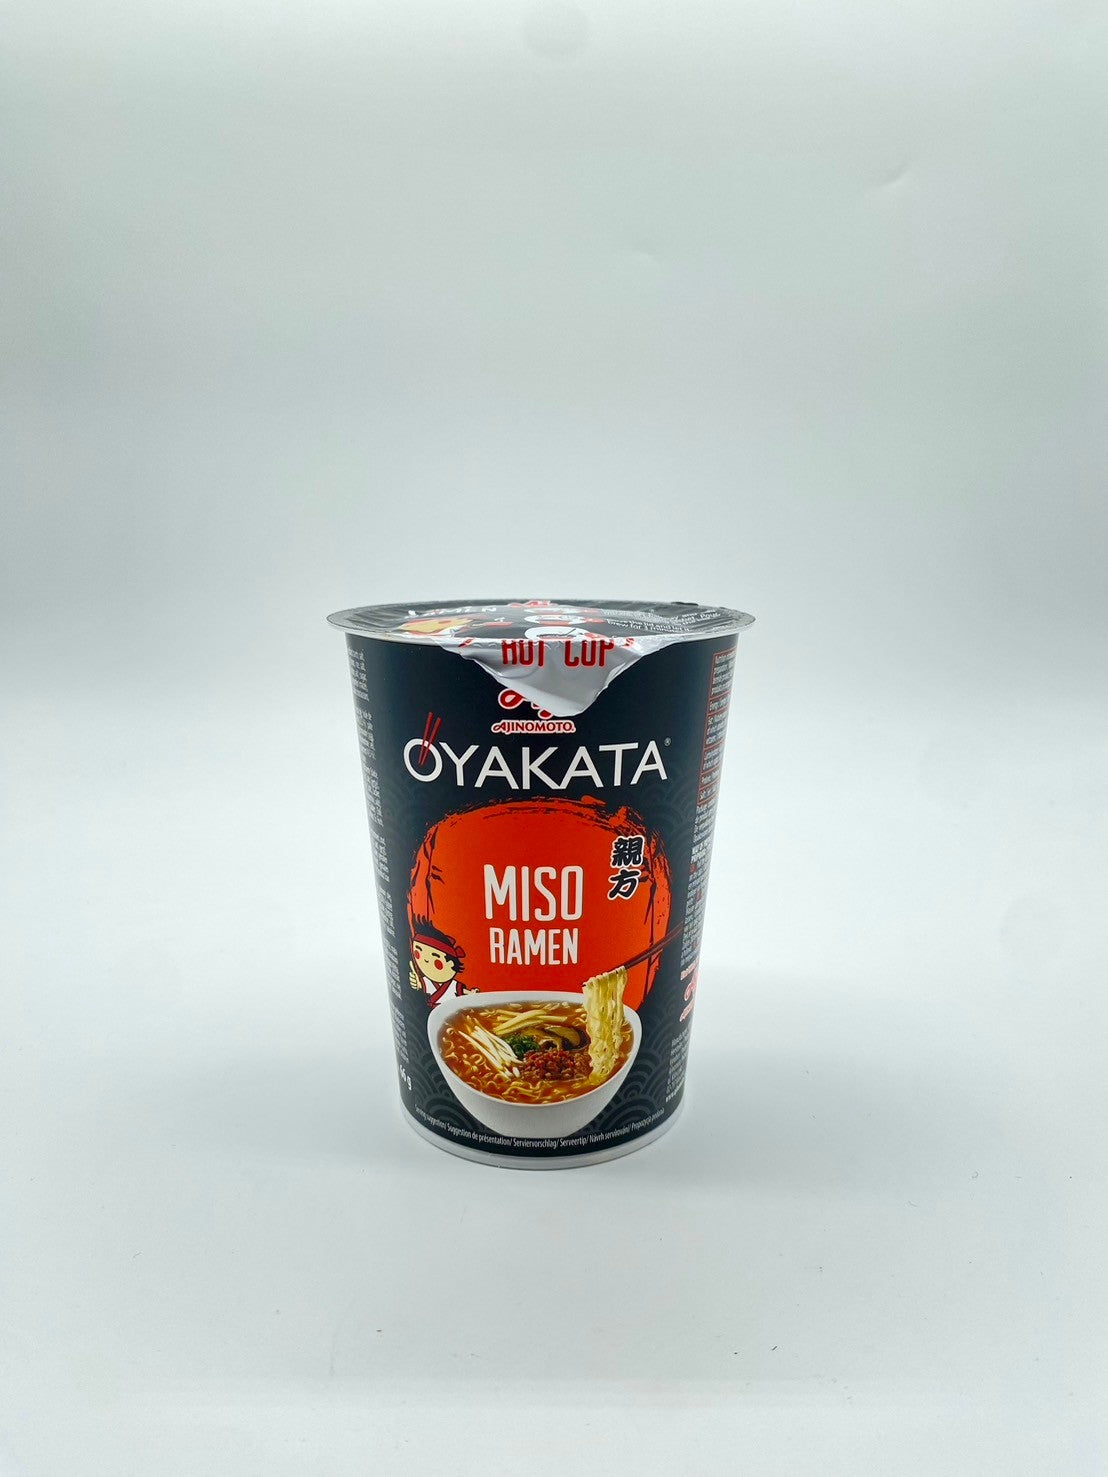 Oyakata Ramen, Instant Cup Noodles "Miso" - Ajinomoto